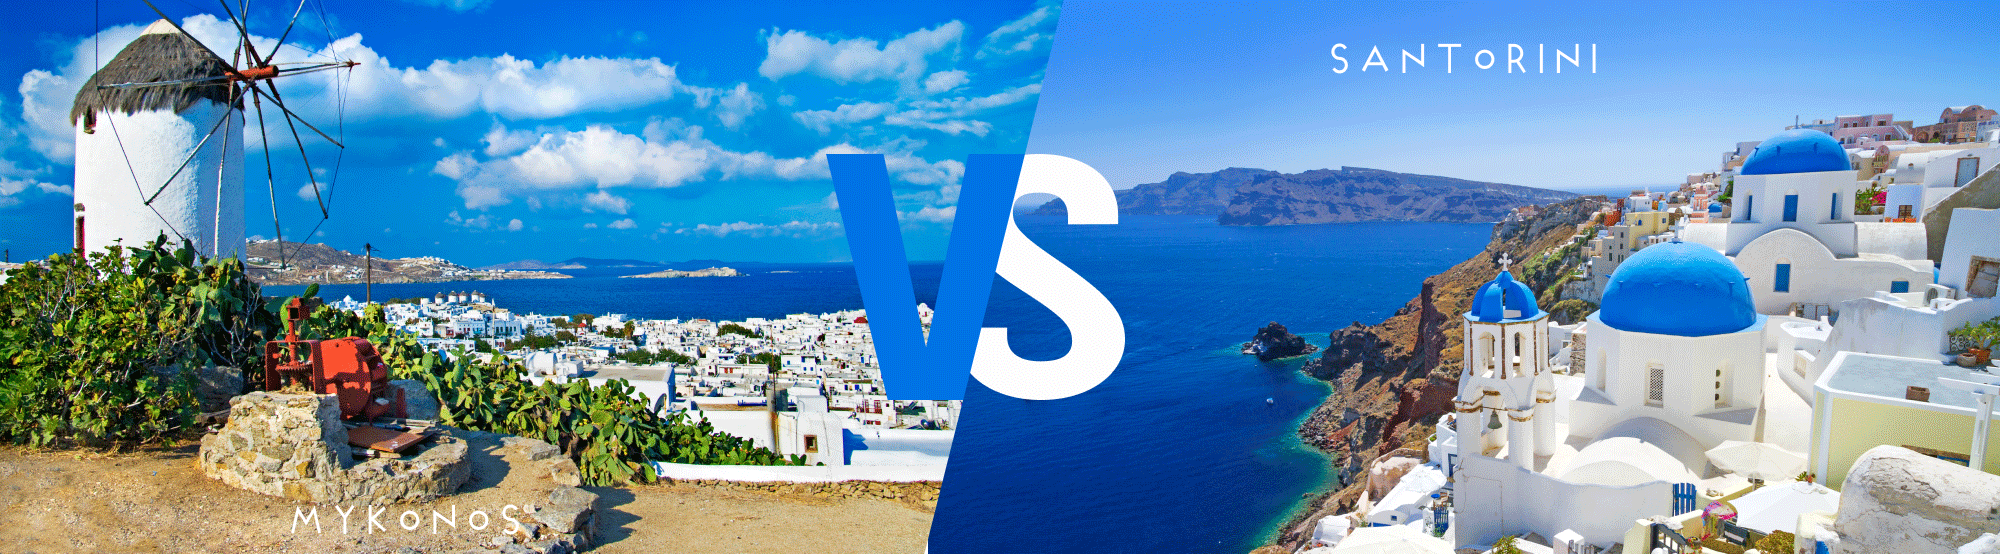 Mykonos ou Santorin : quelle île est la meilleure ?